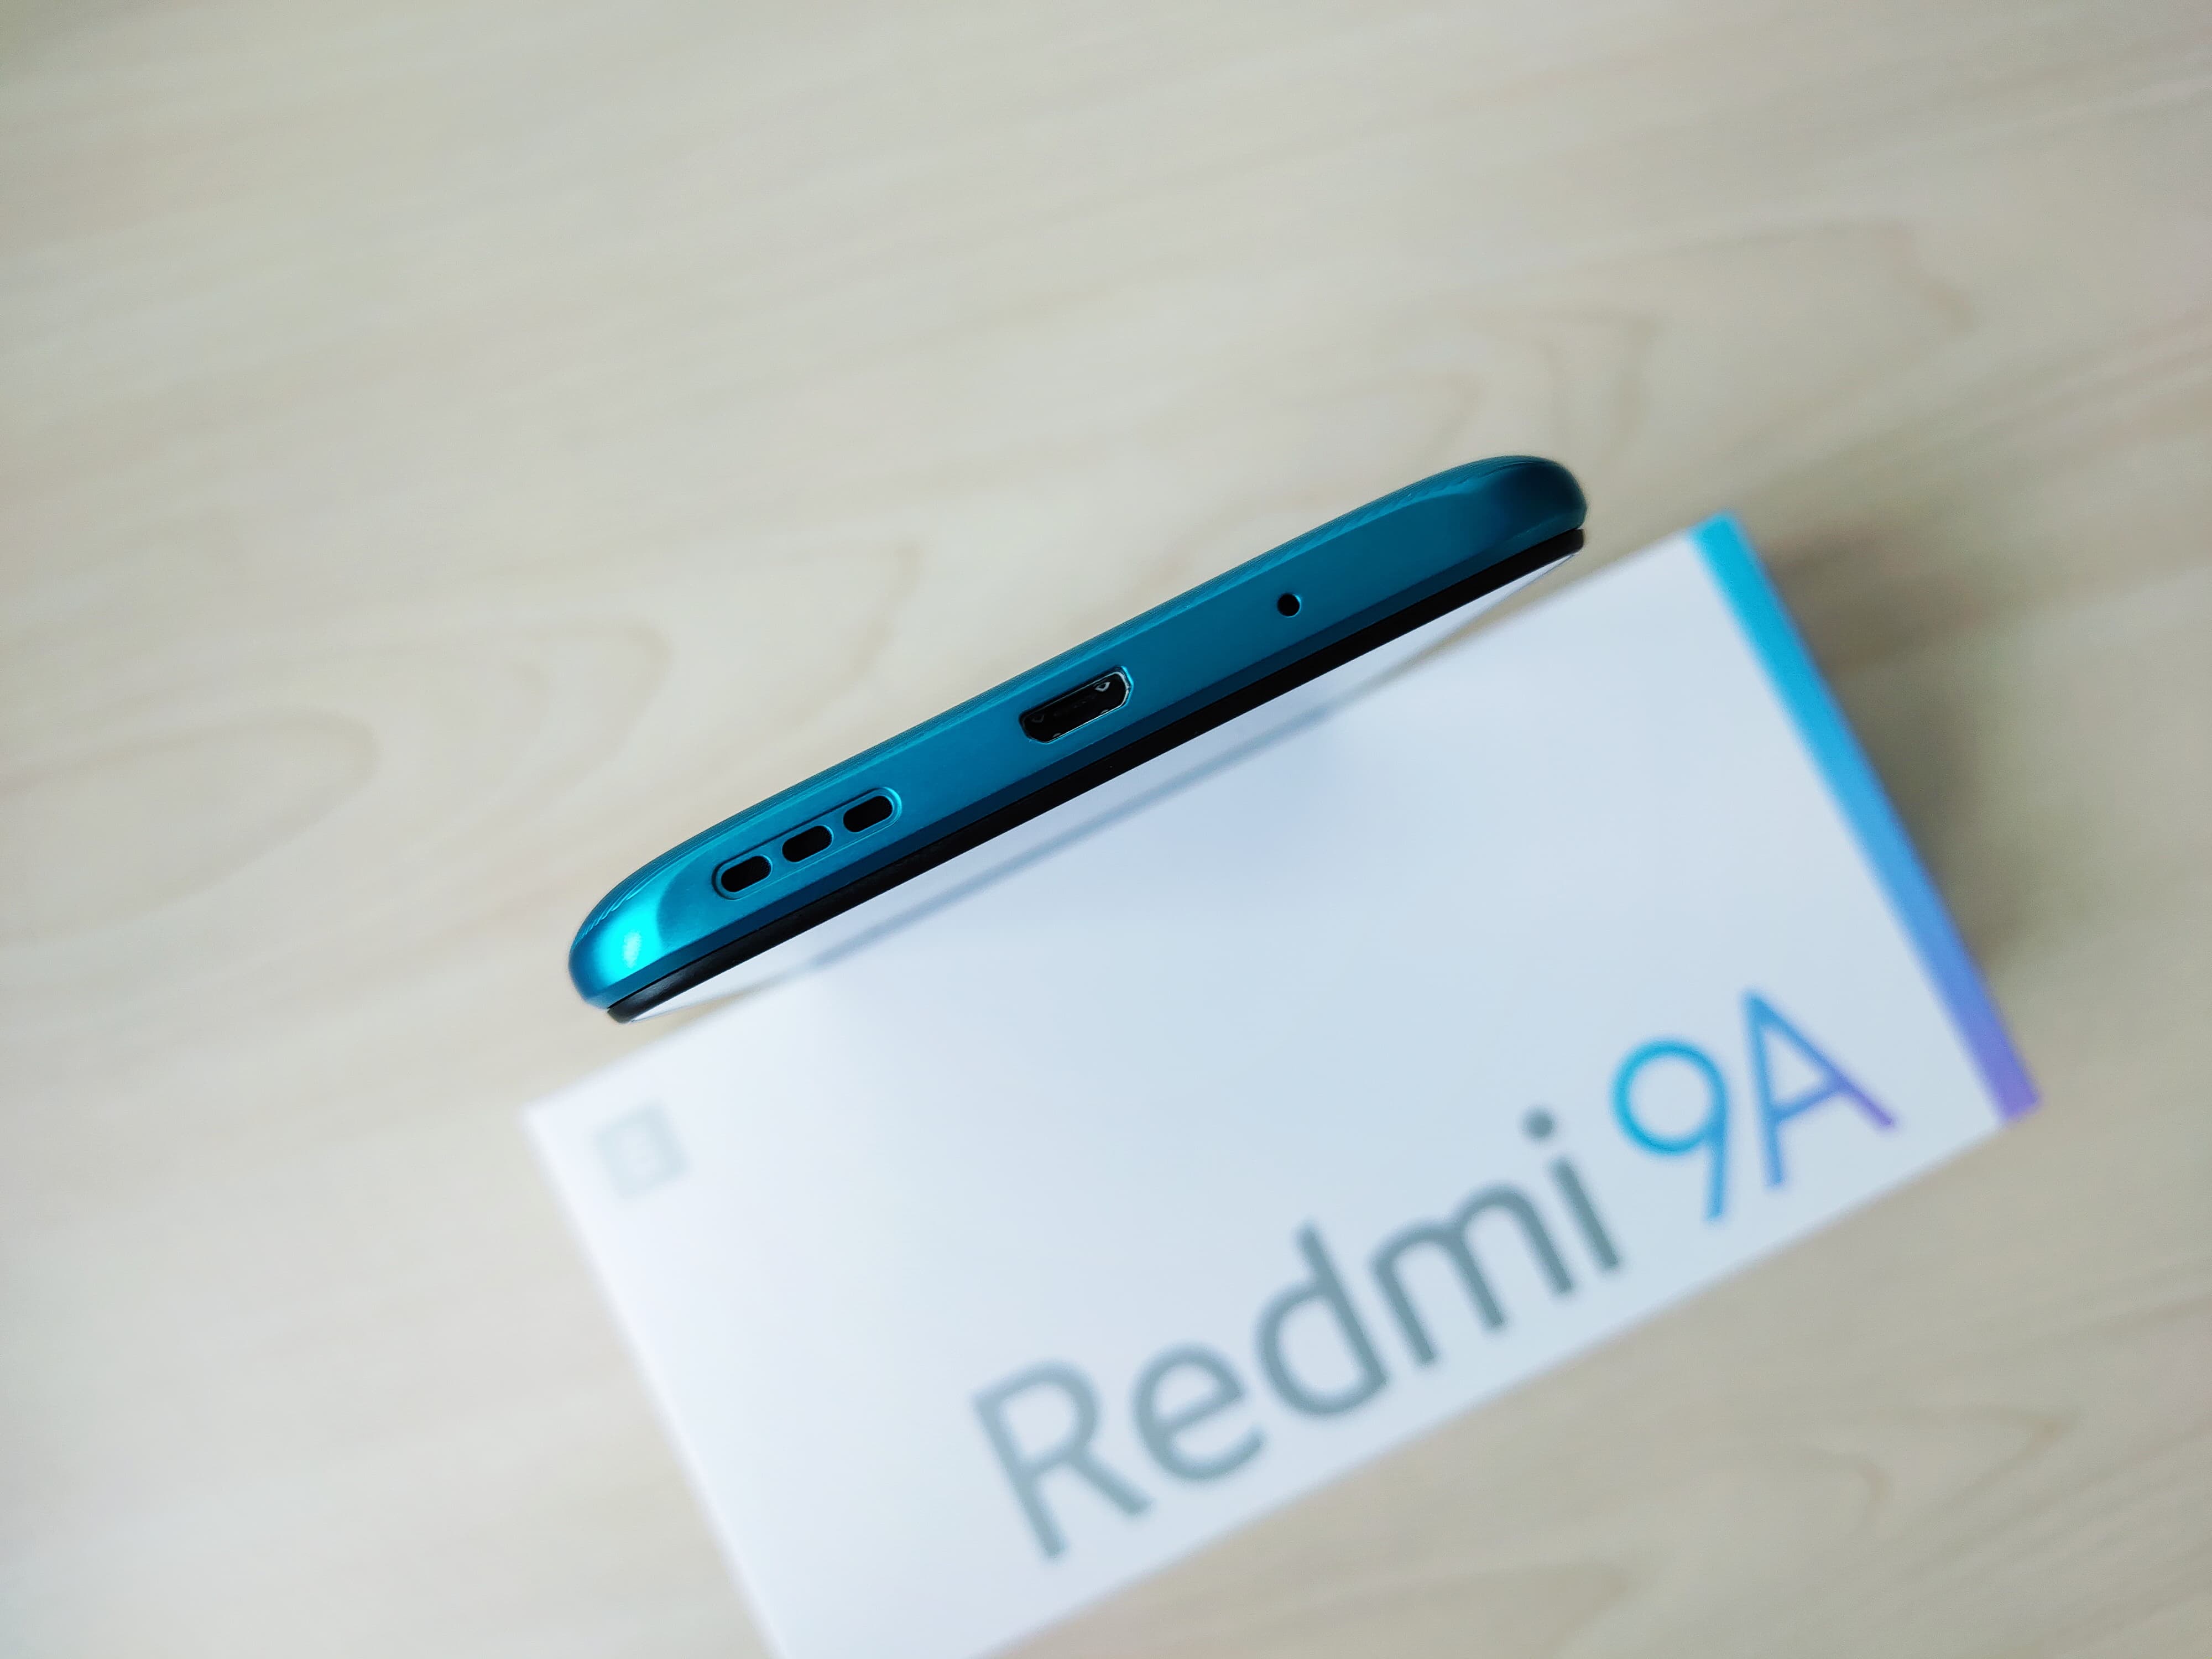 Redmi 9A开箱：没有黑科技 但更暖人心